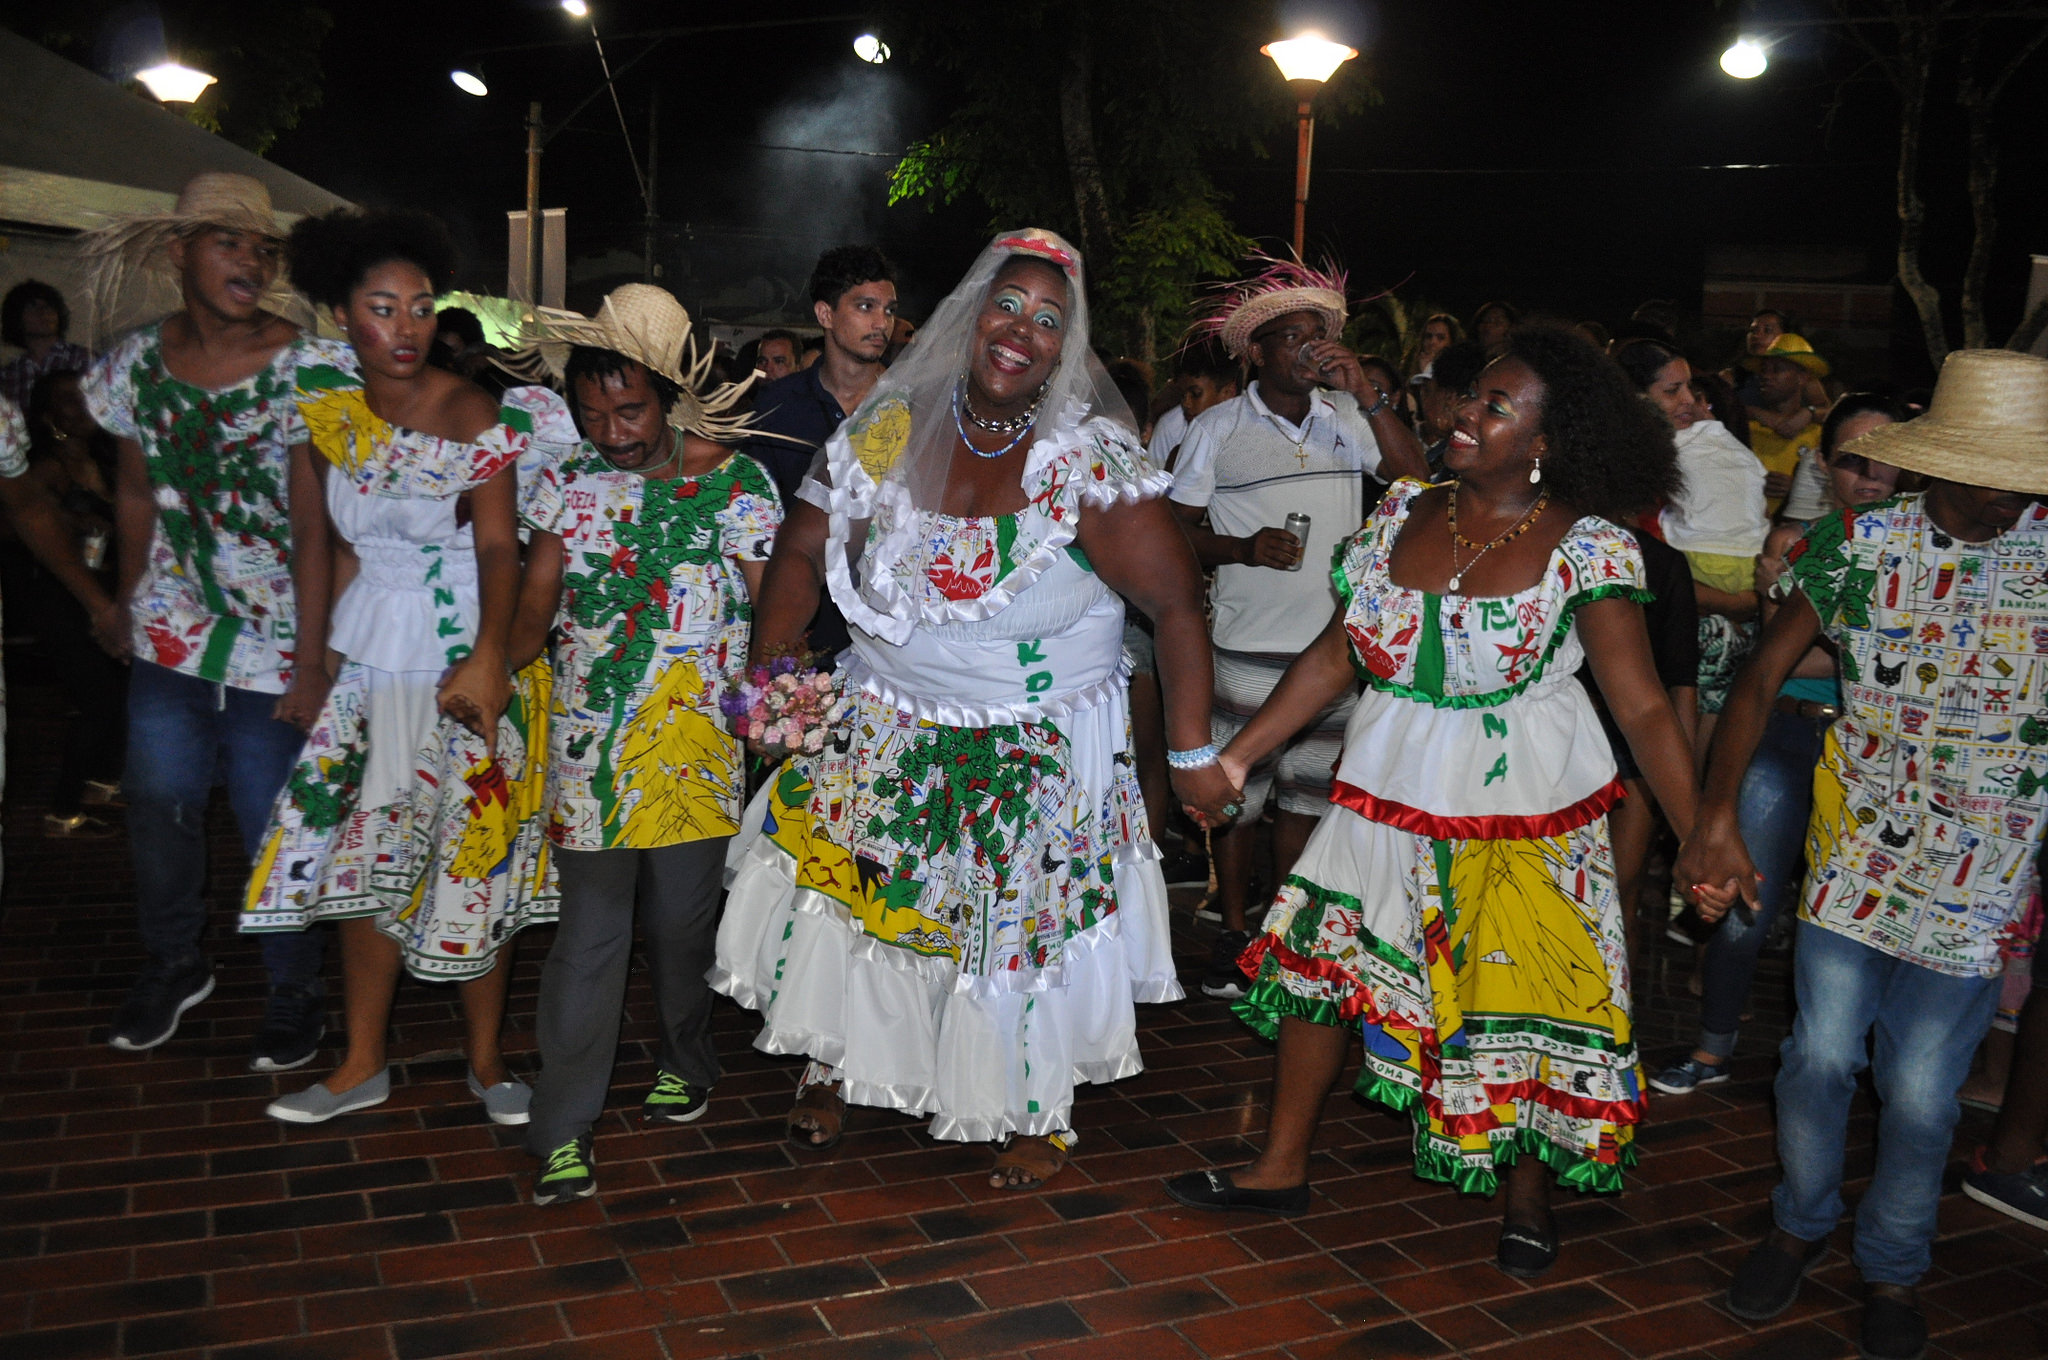 Quadrilha do Bankoma foi sucesso na segunda noite de festejos juninos em Lauro de Freitas